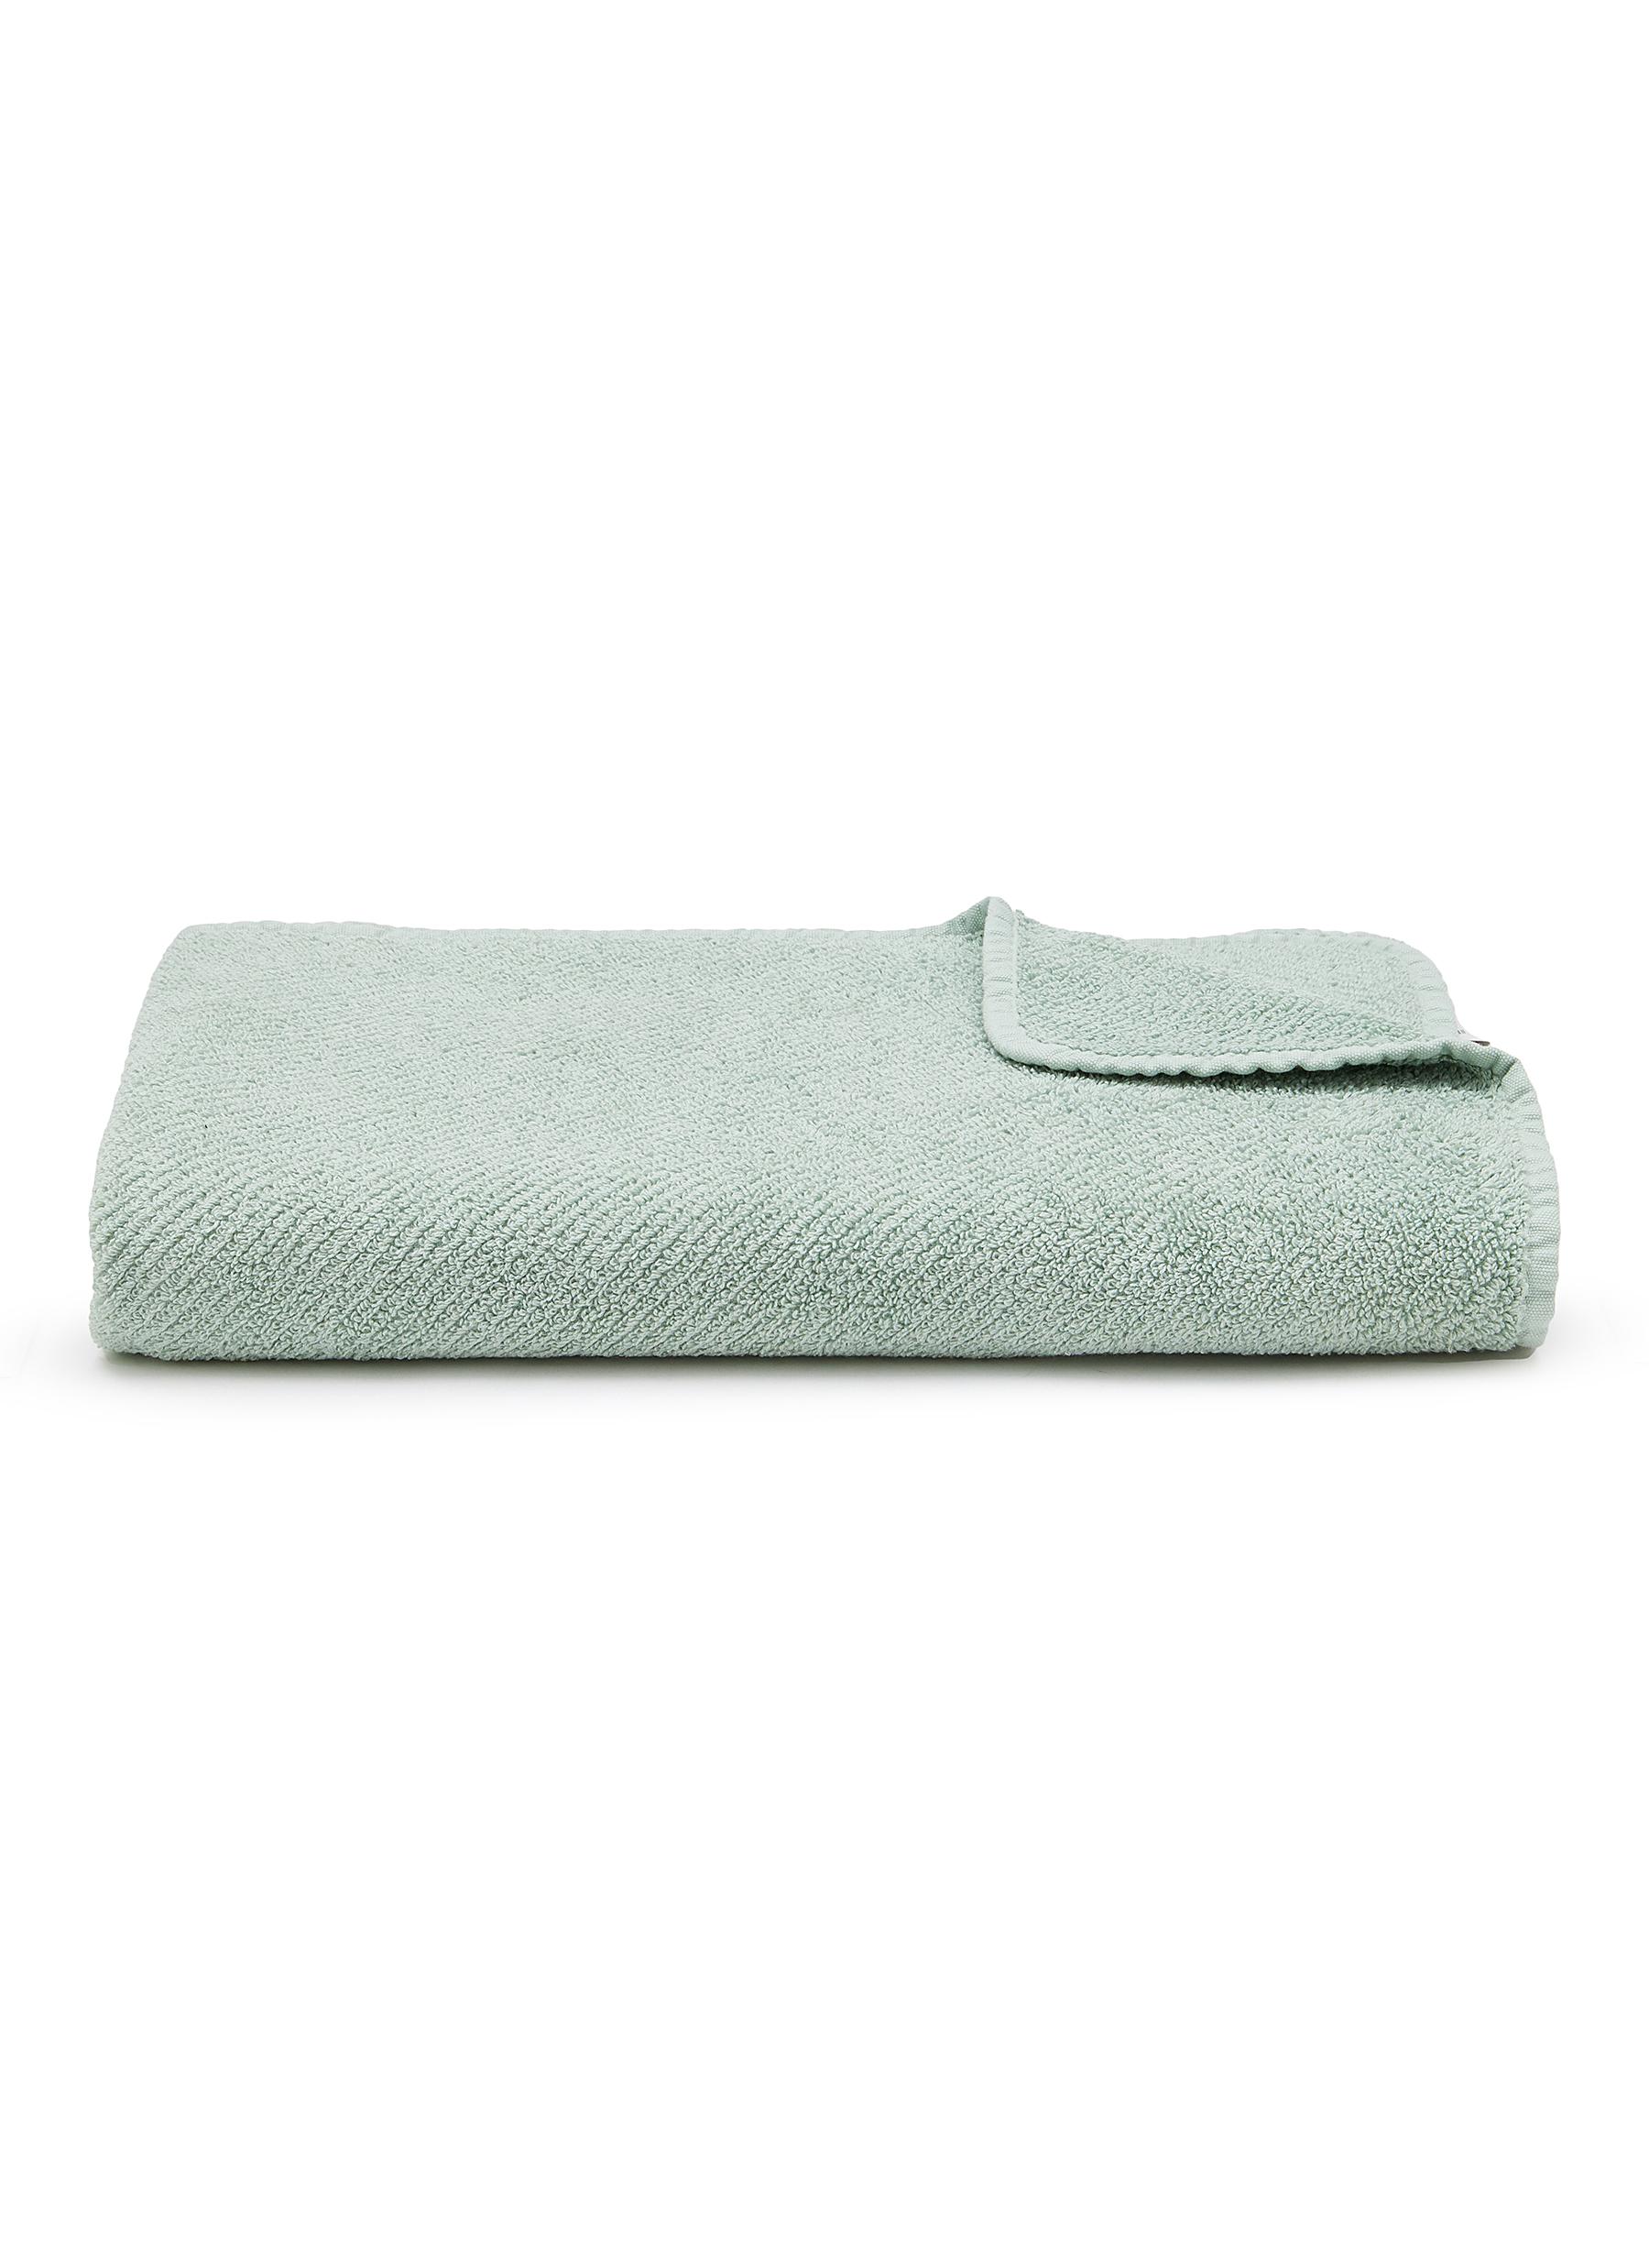 Super Twill Bath Towel - Aqua